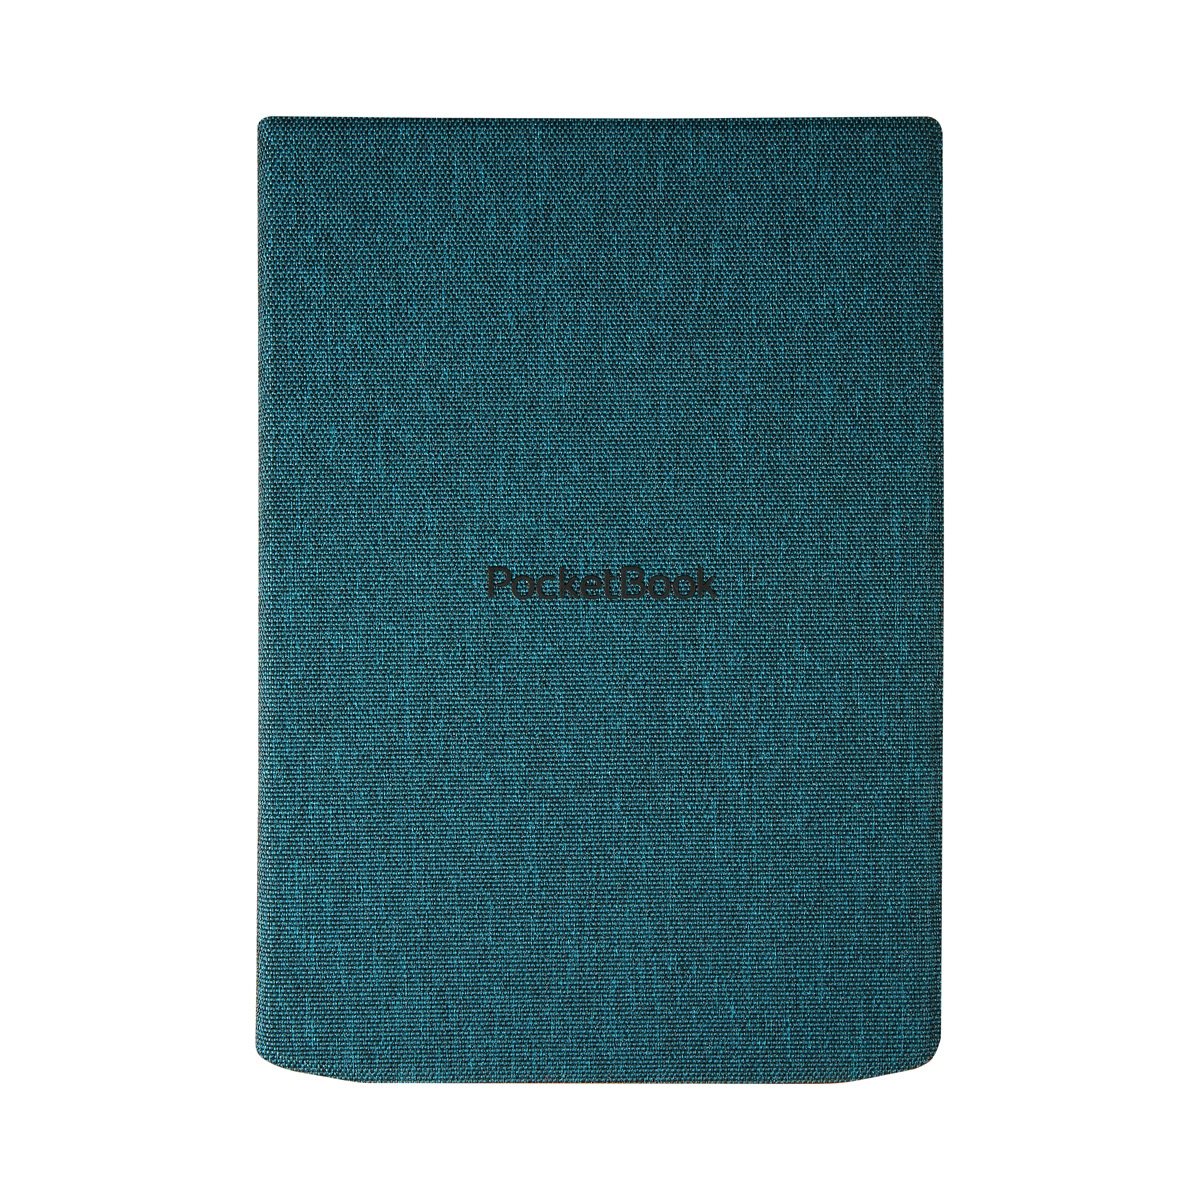 Etui Flip PocketBook InkPad 4